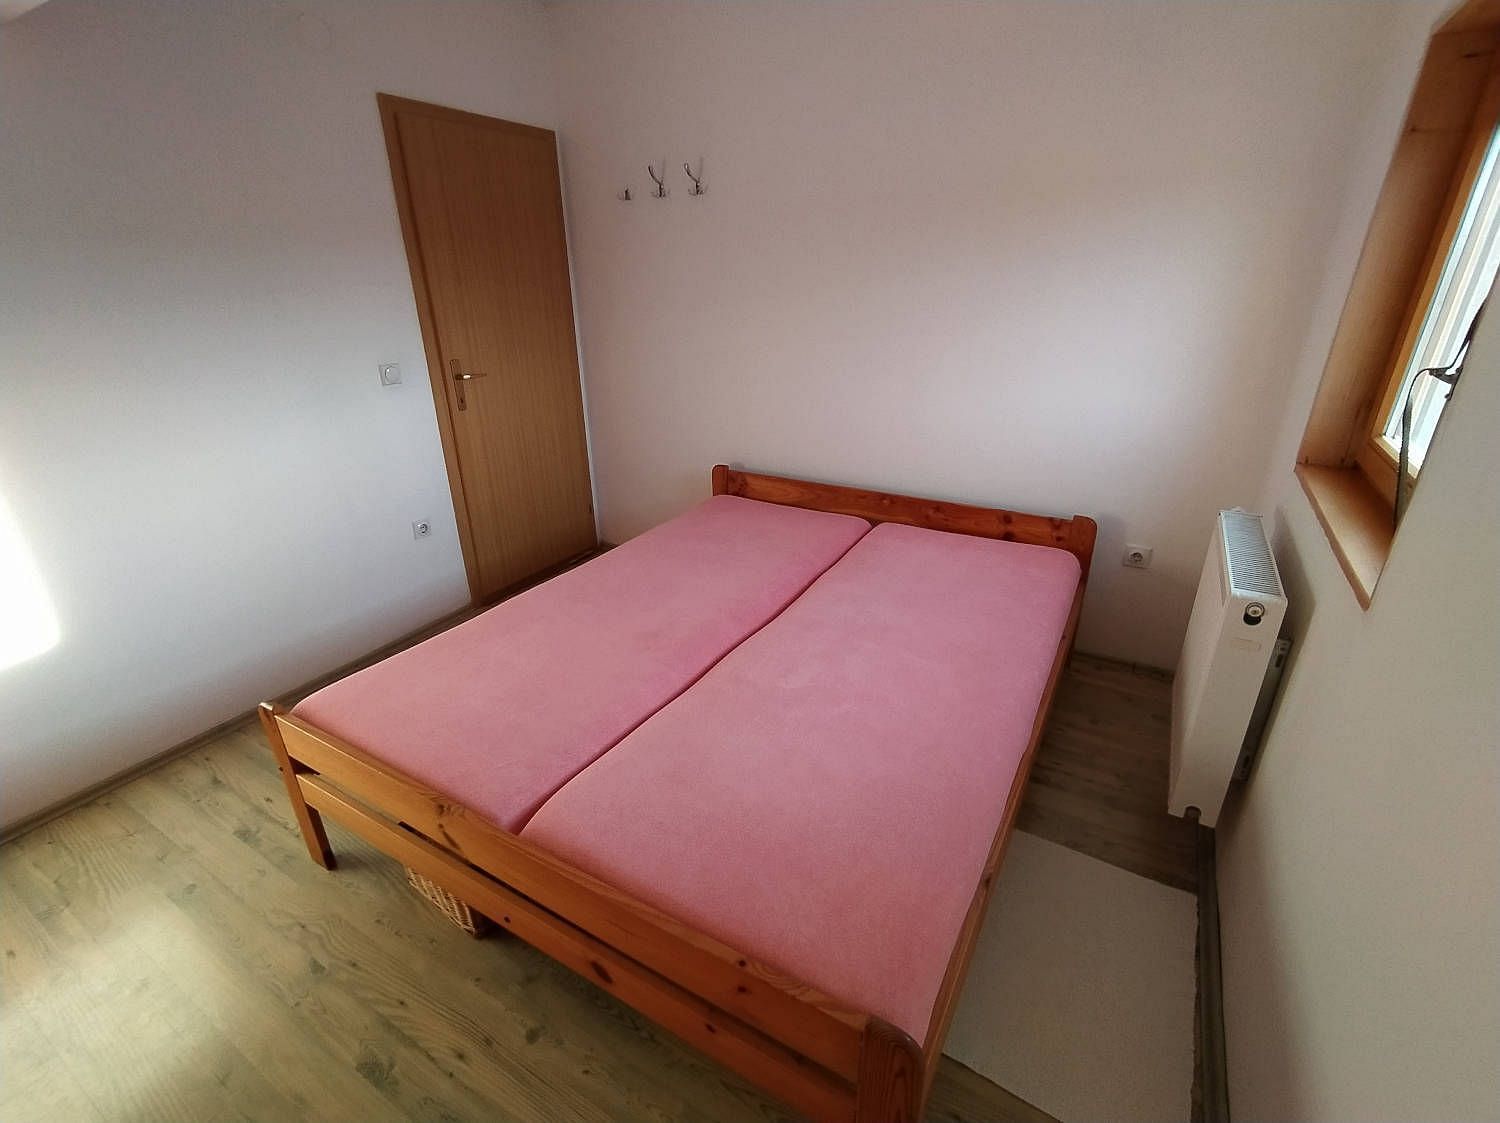 JWguest Apartment at Banja Luka, Republika Srpska | Cozy and spacious apartment | Jwbnb no brobnb 21